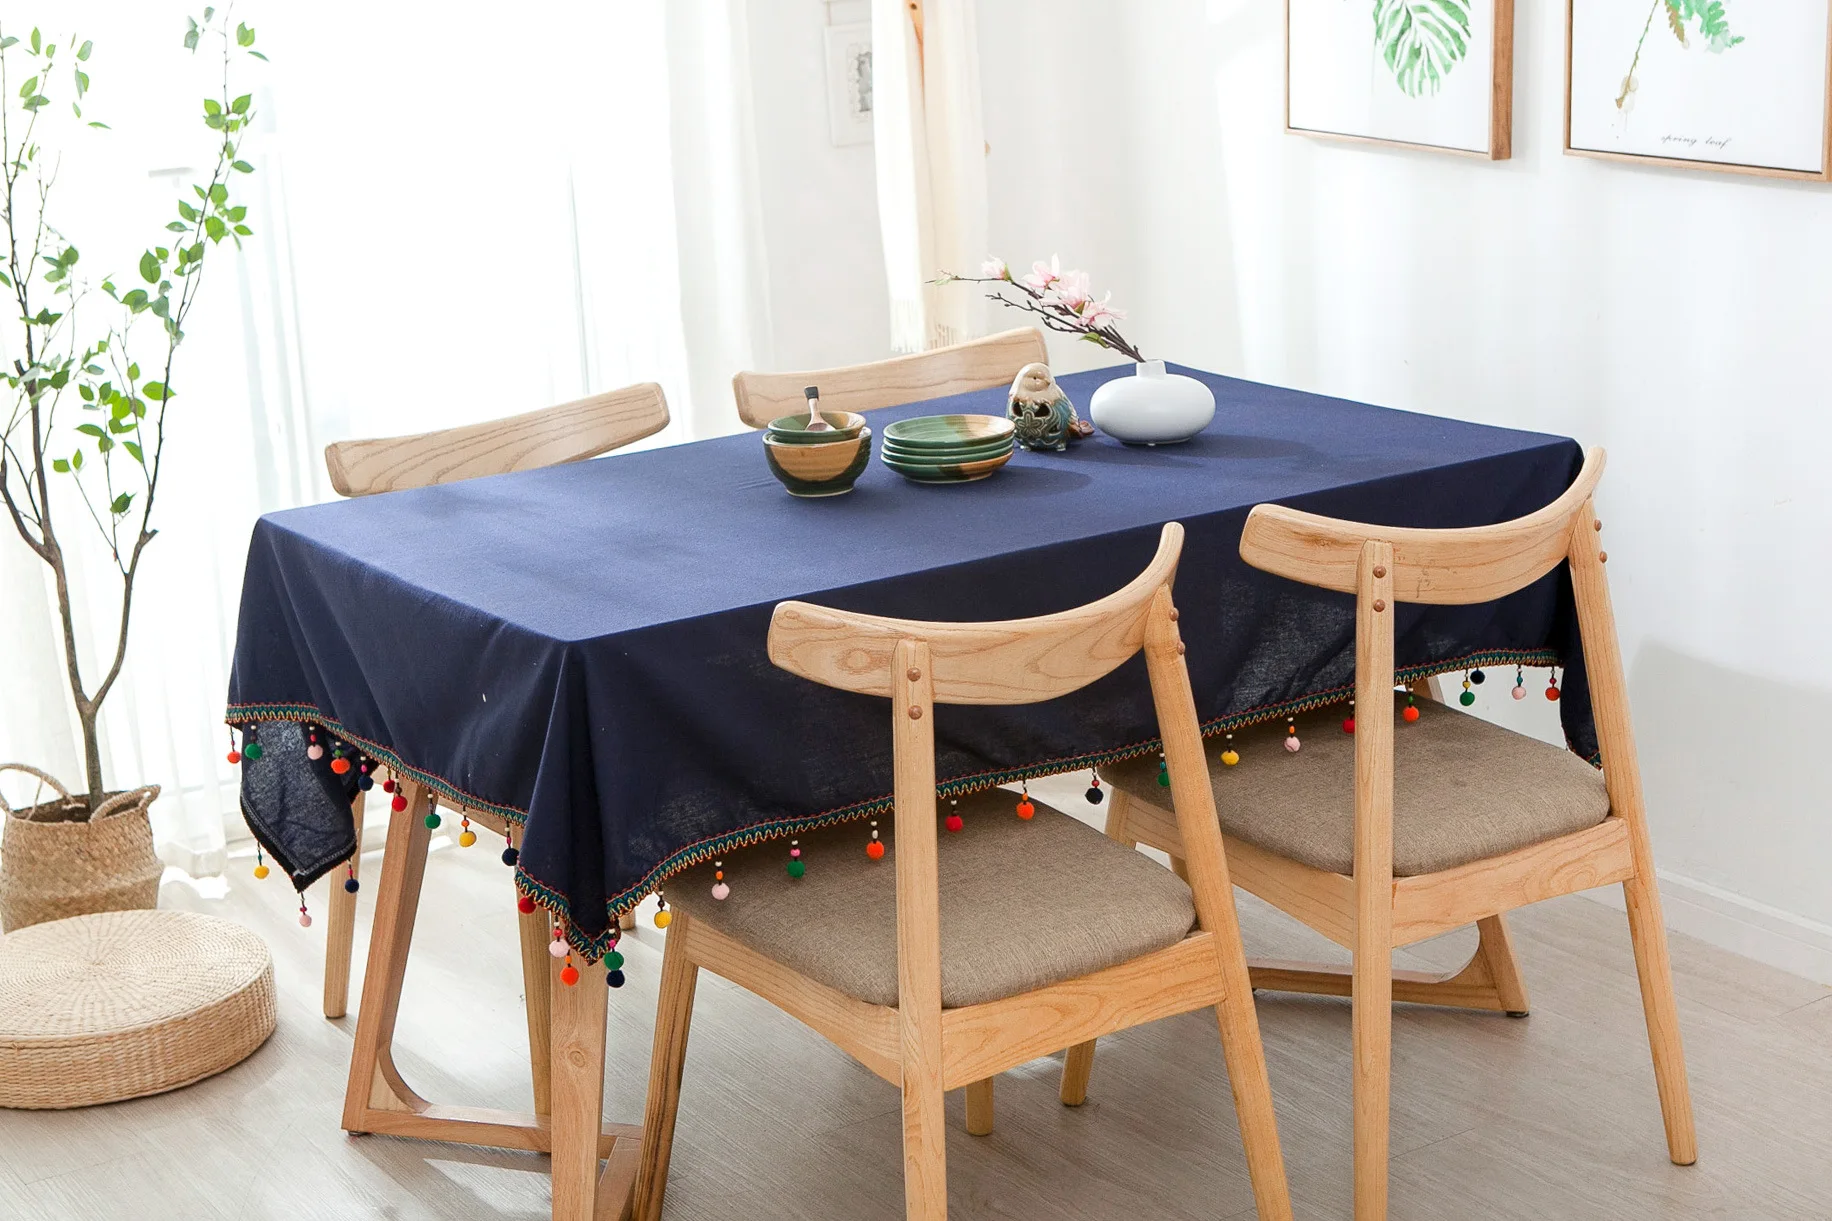 Proud Rose темно-синяя скатерть Tafellaken из хлопка и льна, креативная кисточка для скатерти, покрытие для стола, свадебное украшение